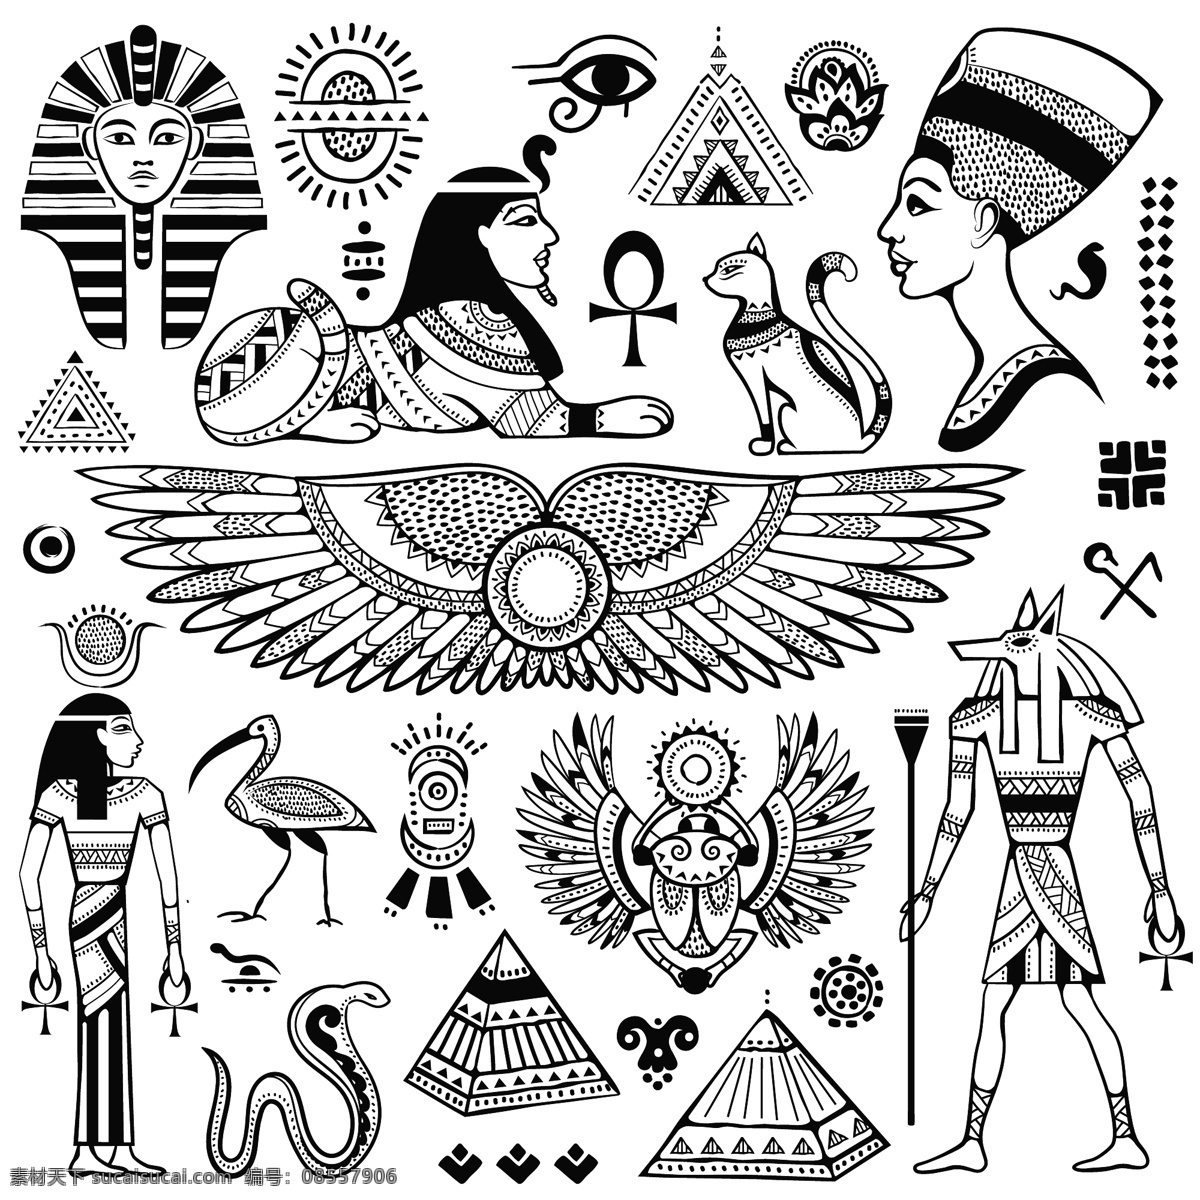 古埃及文化 埃及文化元素 矢量素材 文化特色 扁平化图标 金字塔 狮身人面像 法老 文化艺术 传统文化 白色